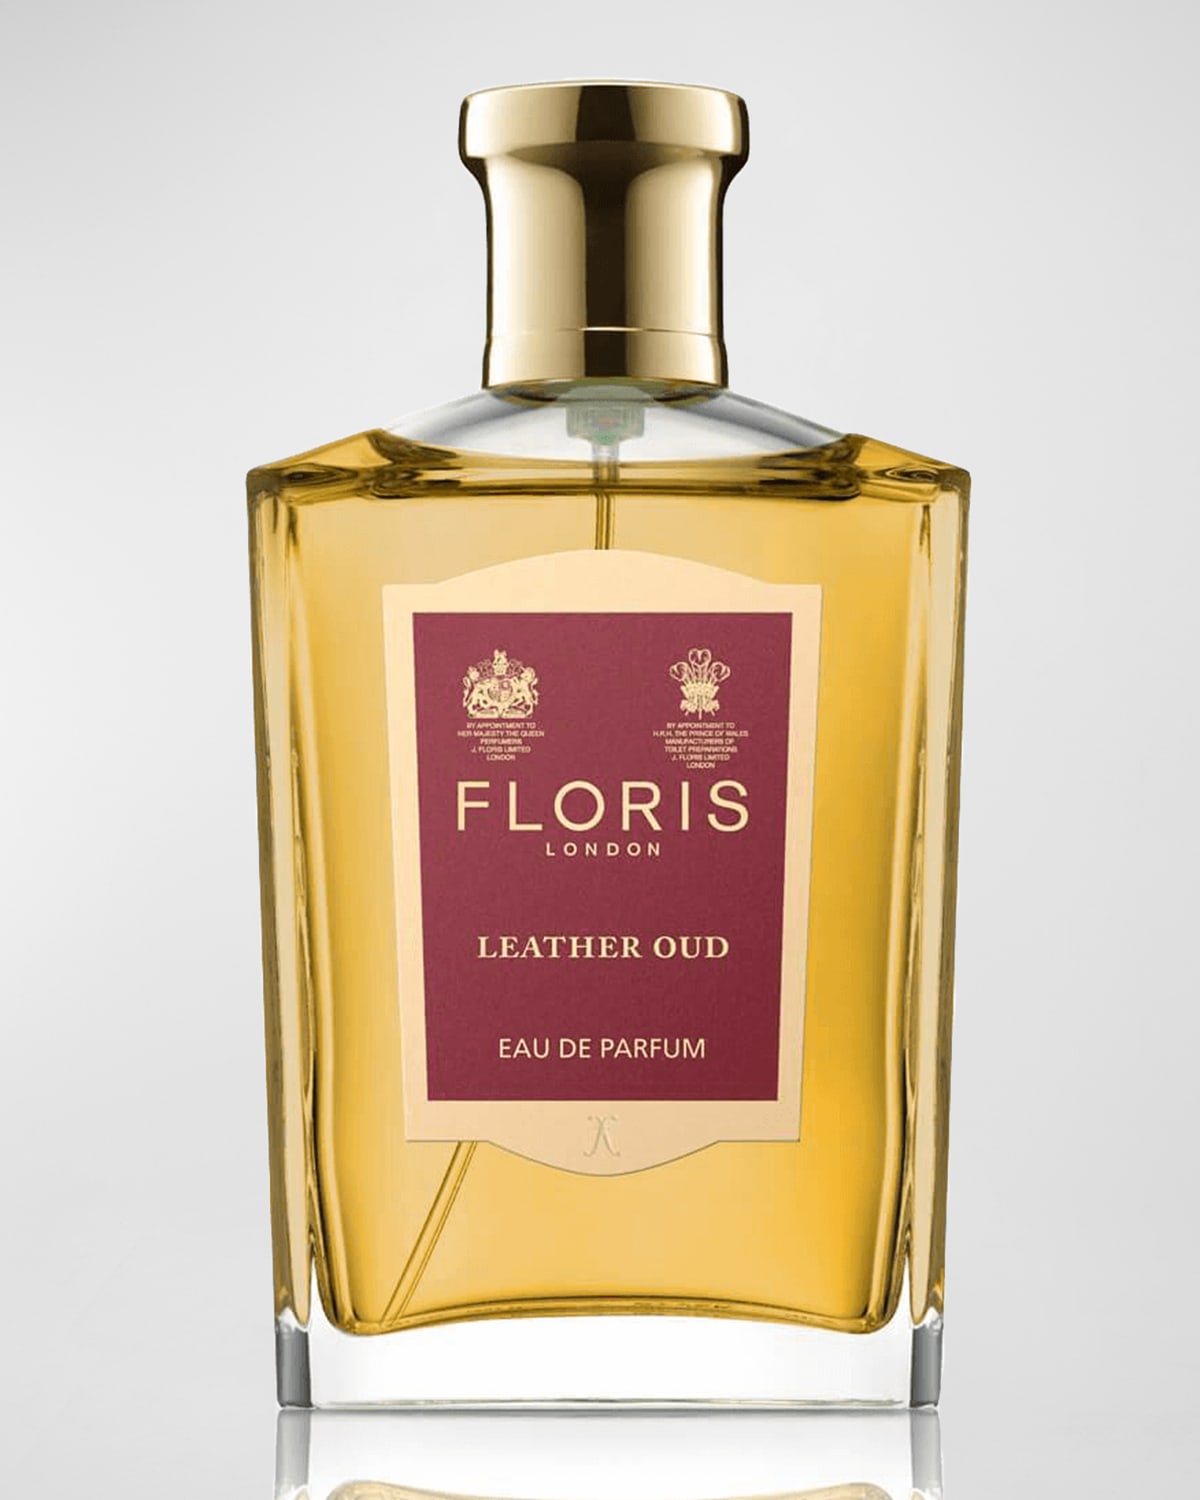 Floris London Leather Oud Eau de Parfum, 3.4 oz.